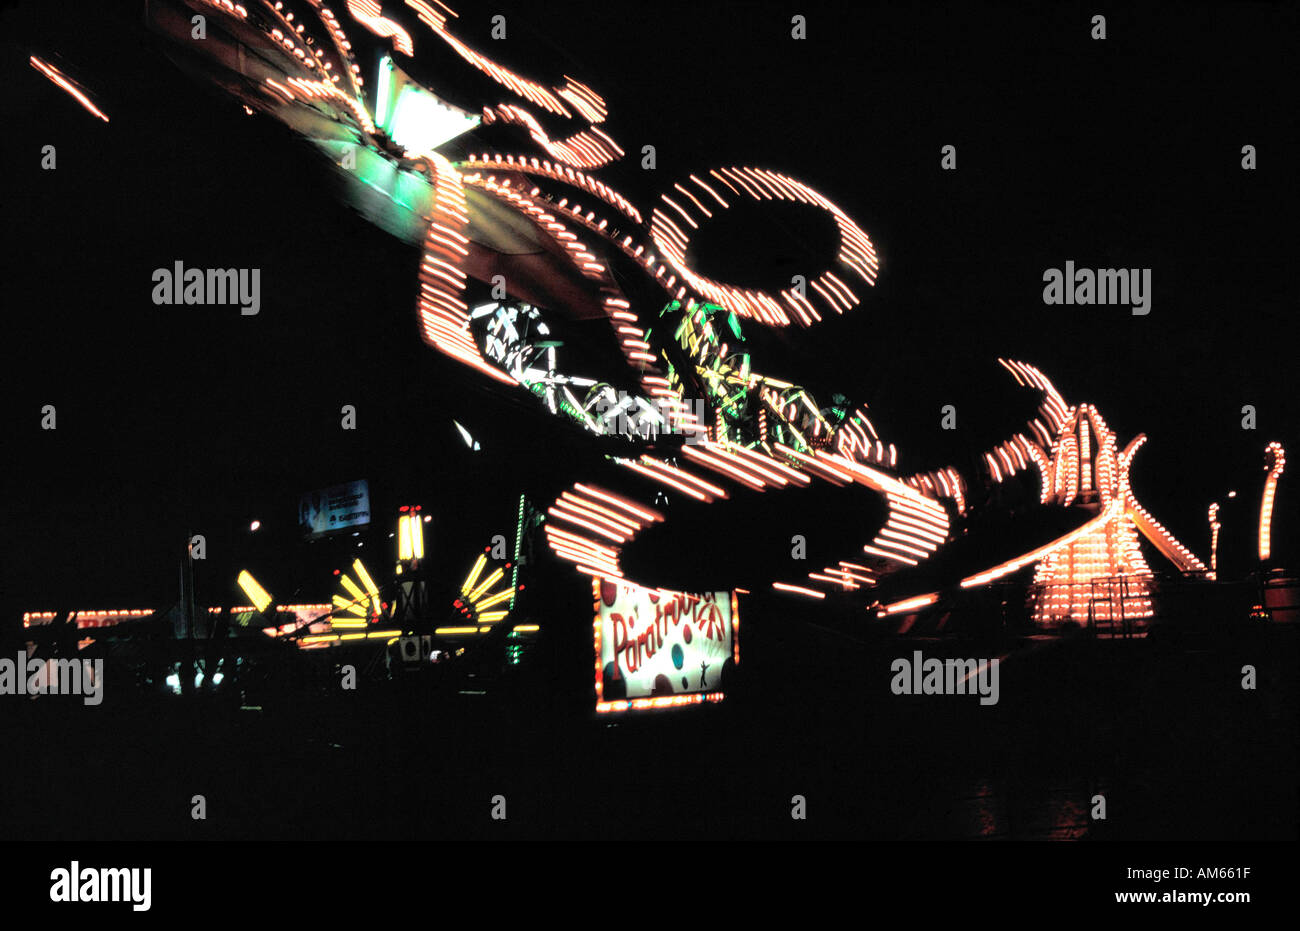 Paratrooper ride sur le midway blurred motion photo de nuit Banque D'Images